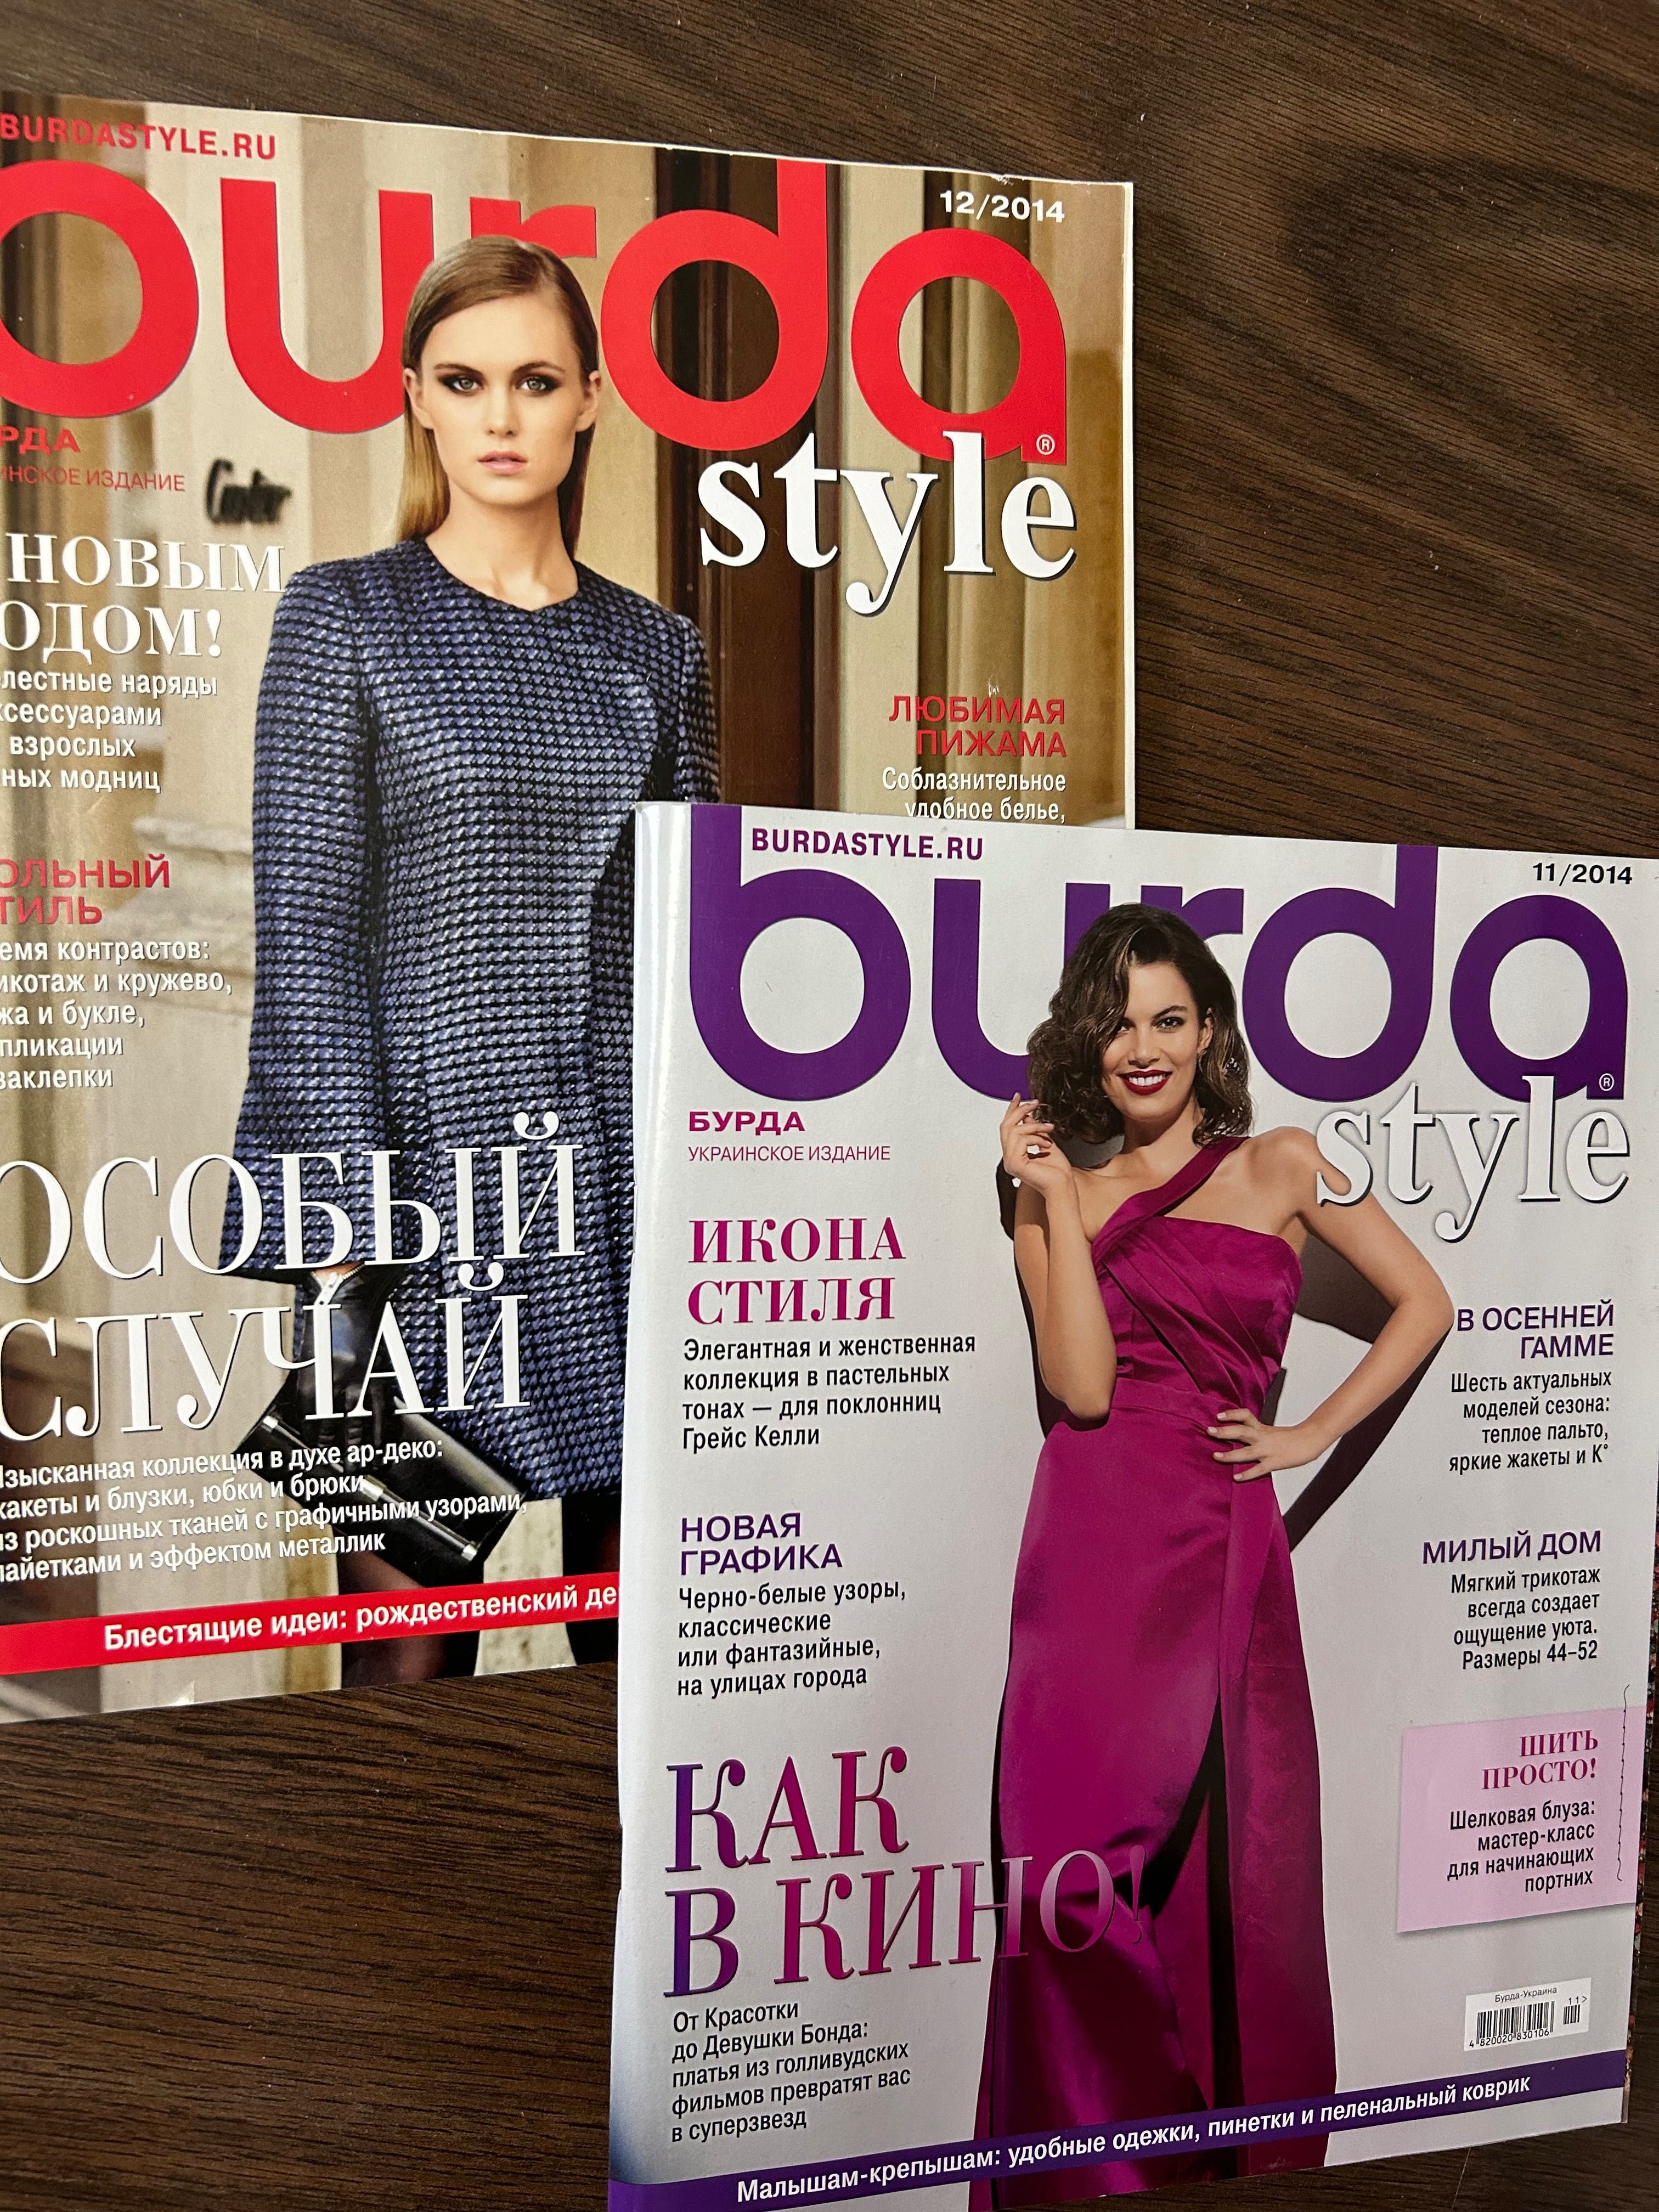 Журнали Бурда Burda